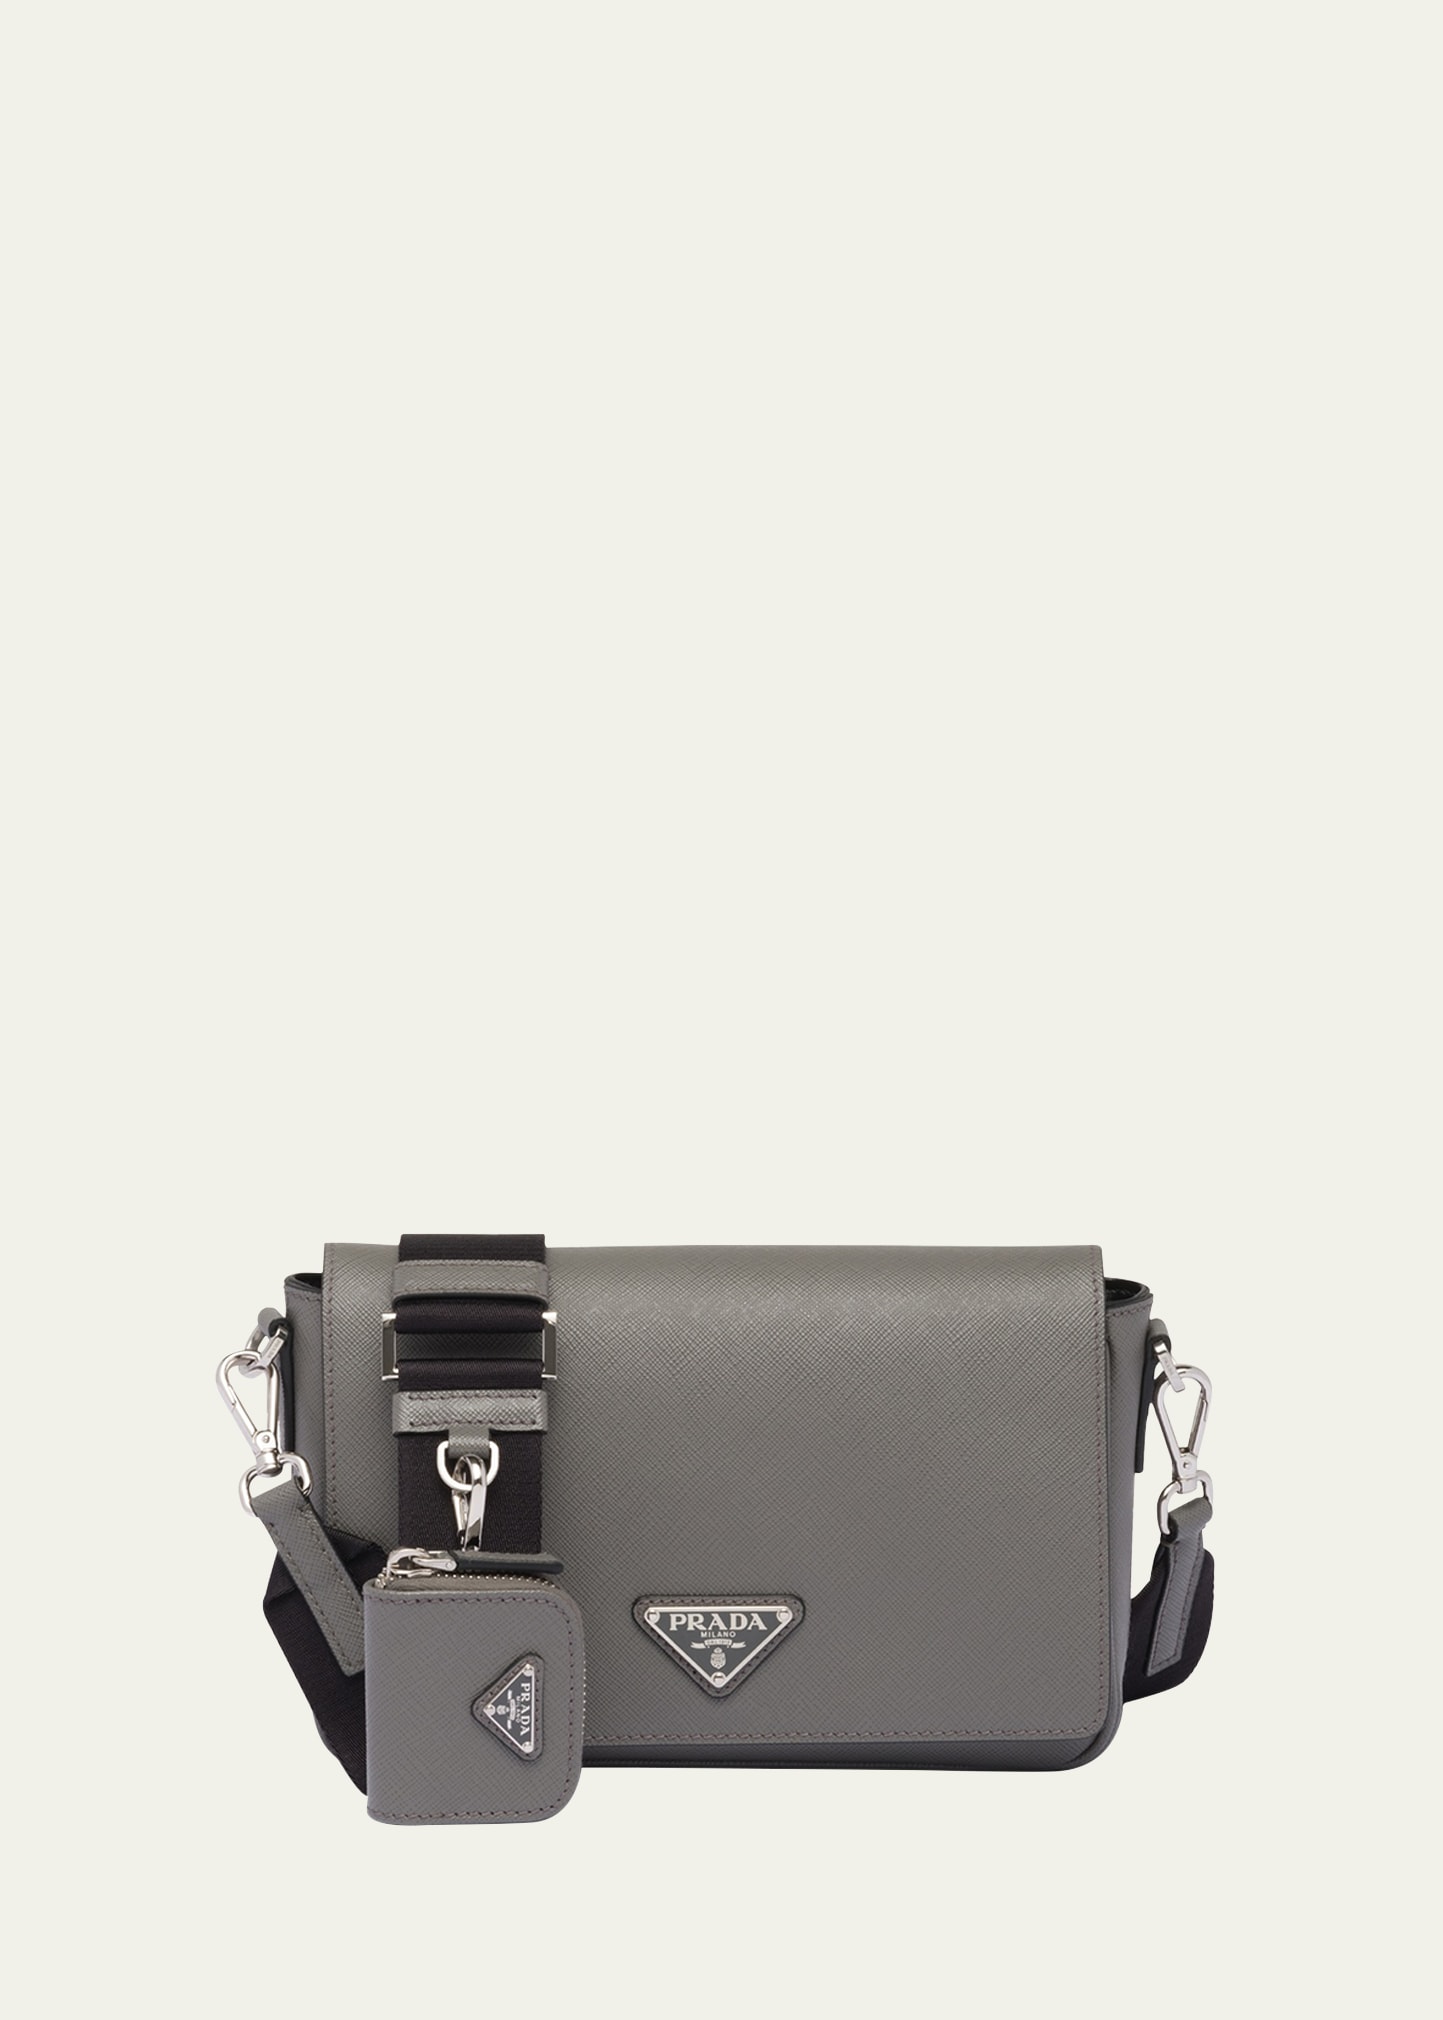 Prada Saffiano Lux Crossbody Bag, White - Bergdorf Goodman